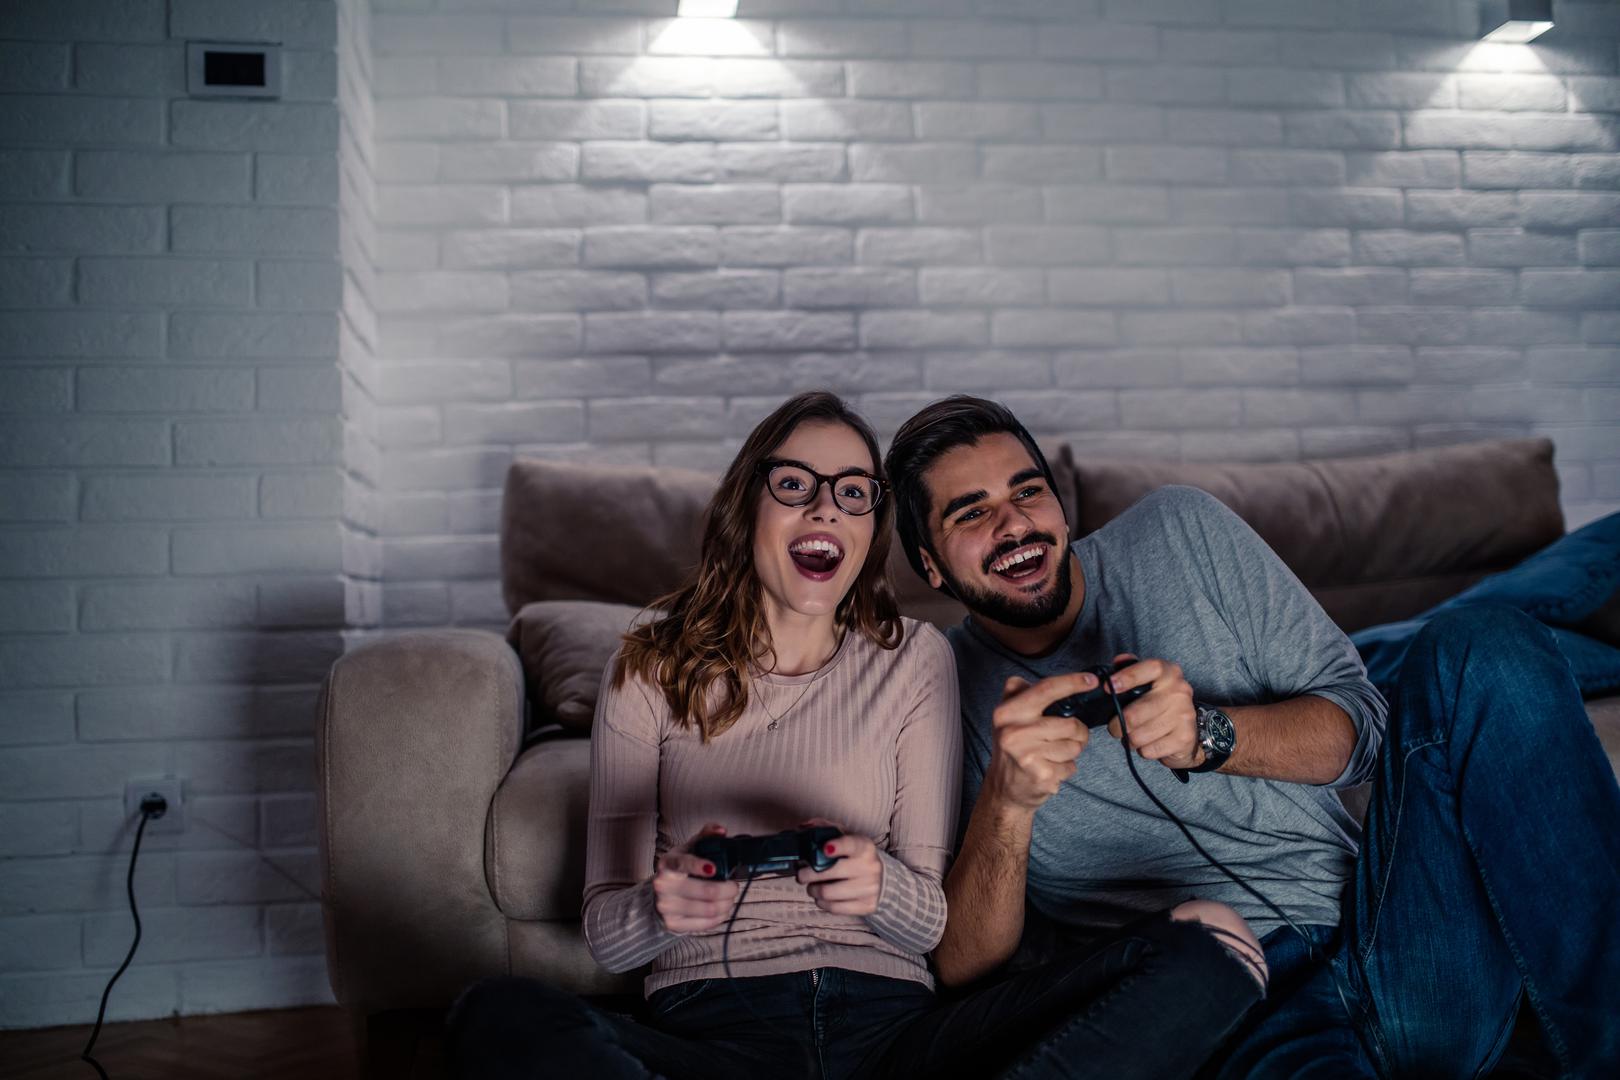 6. Ako želite još malo zabave nakon seksa možete igrati igrice na playstationu. 